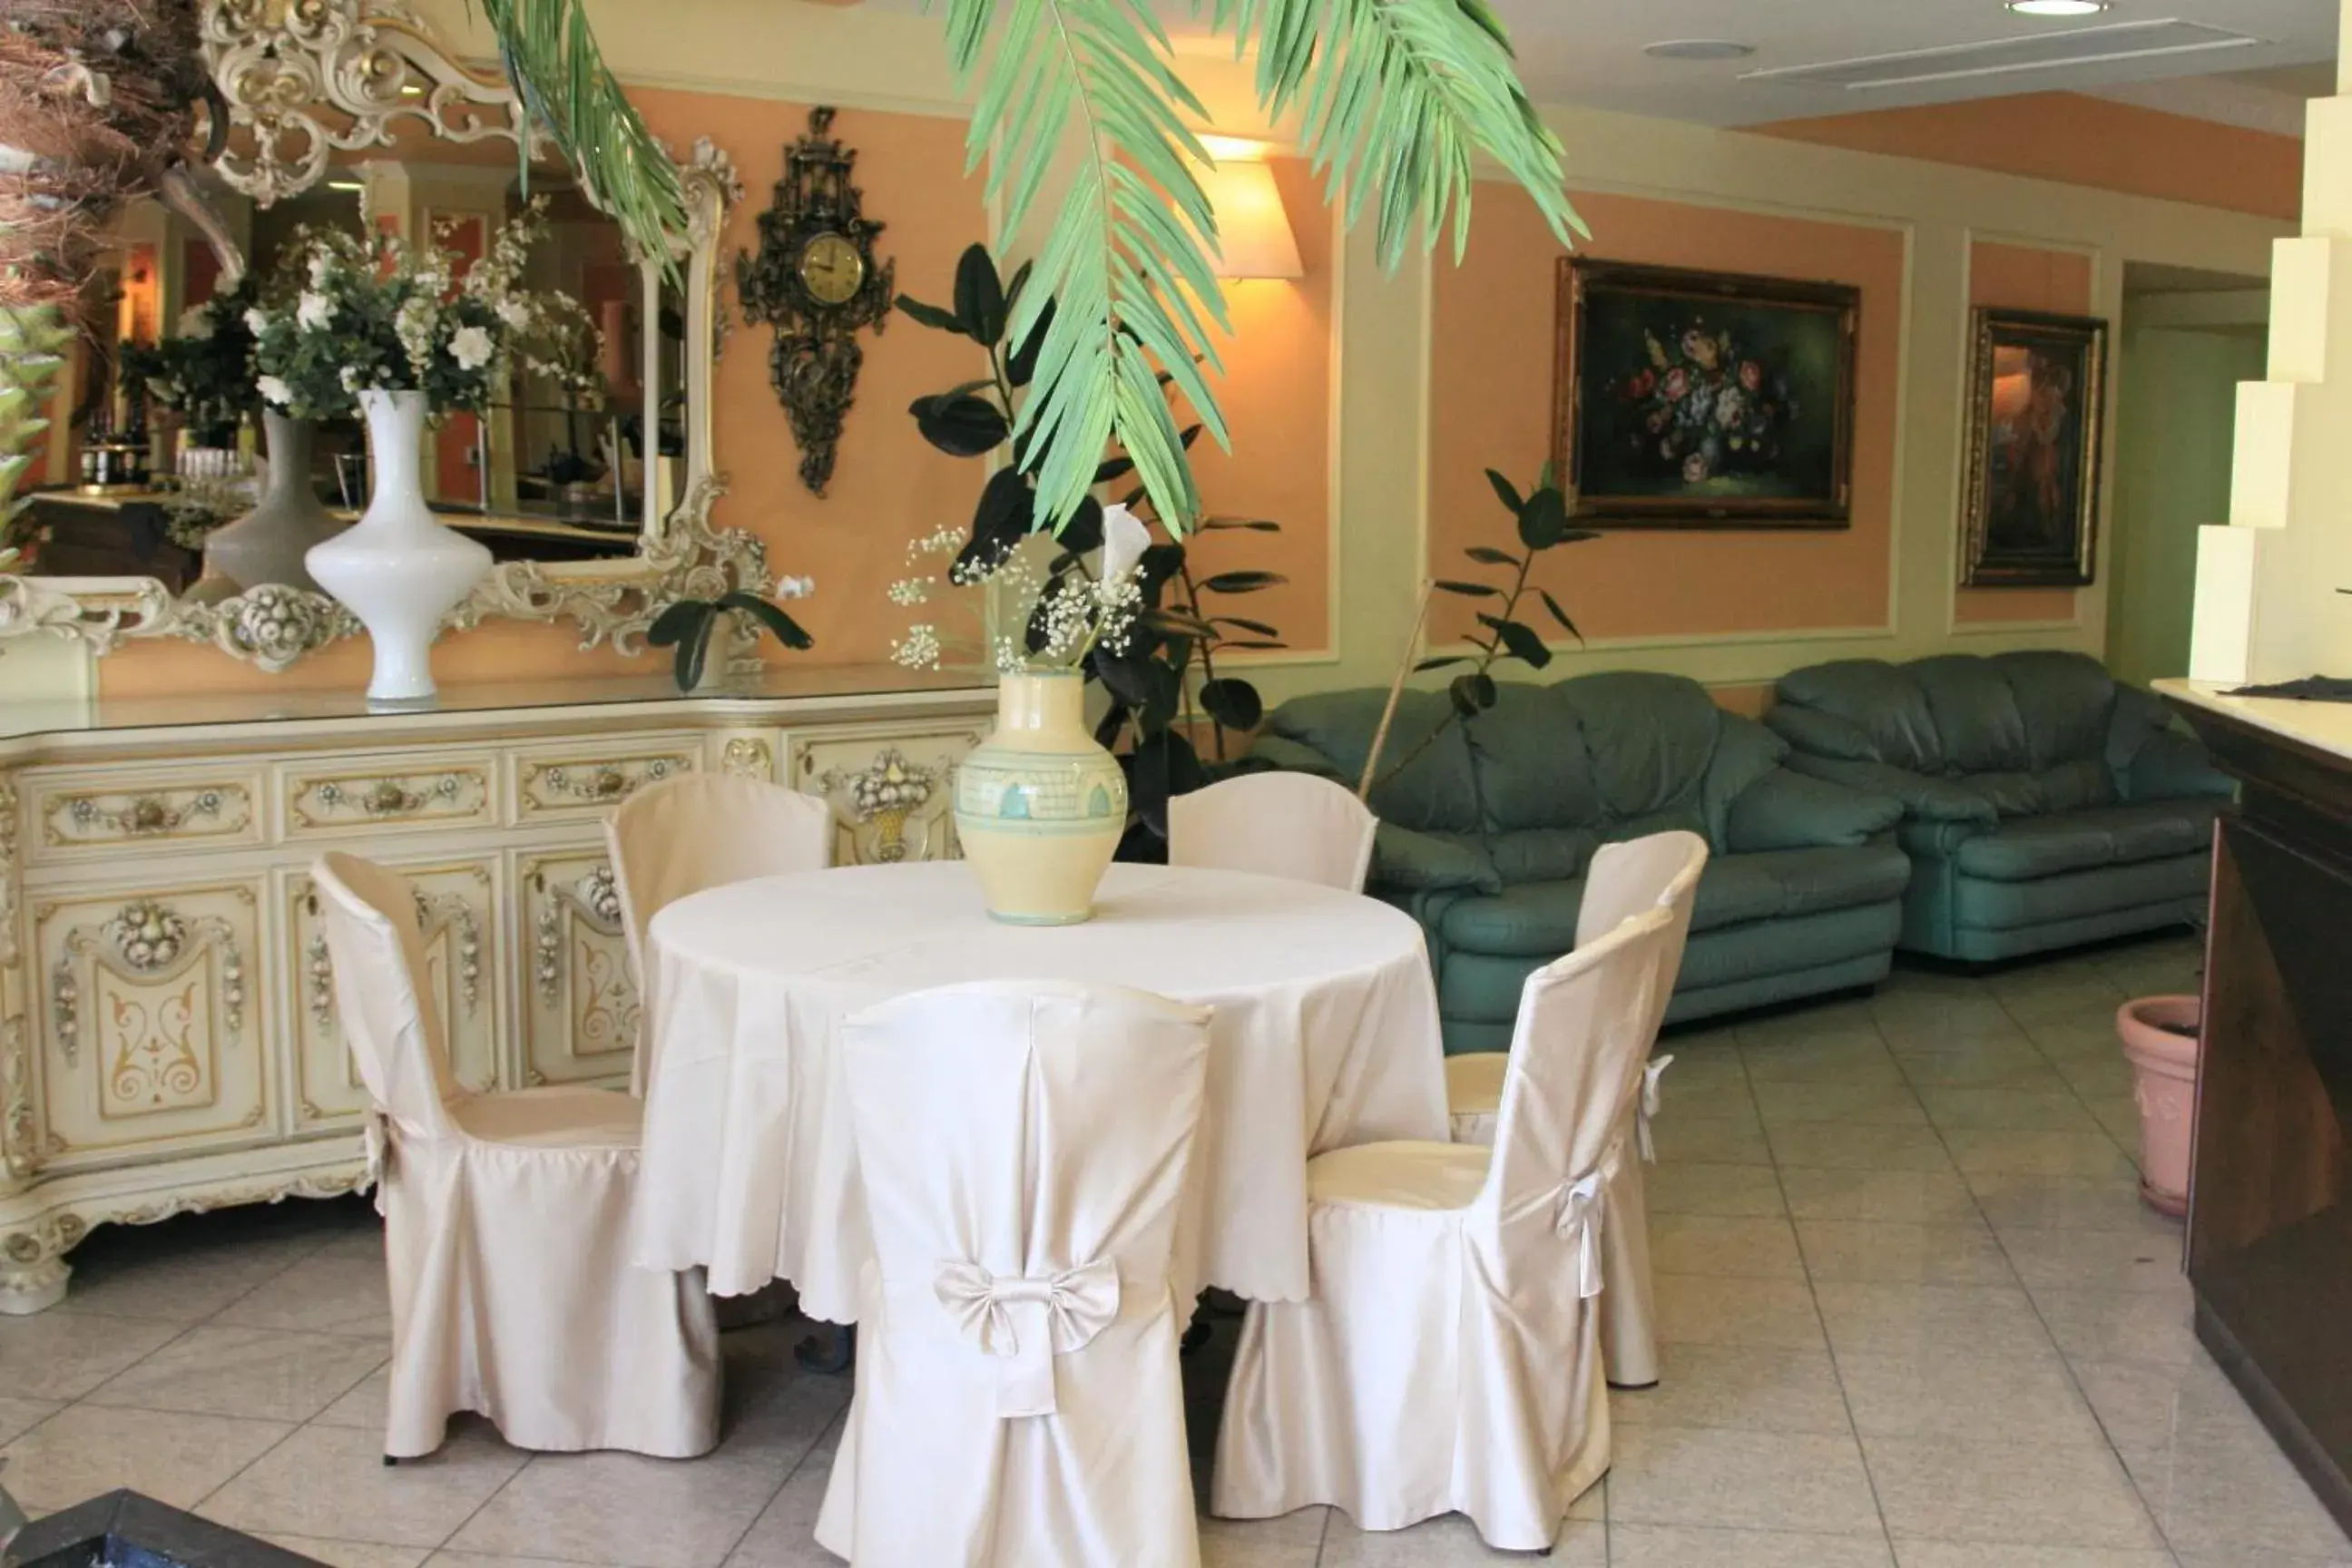 Banquet/Function facilities, Banquet Facilities in Balconata 2.0 Banqueting & Accommodations